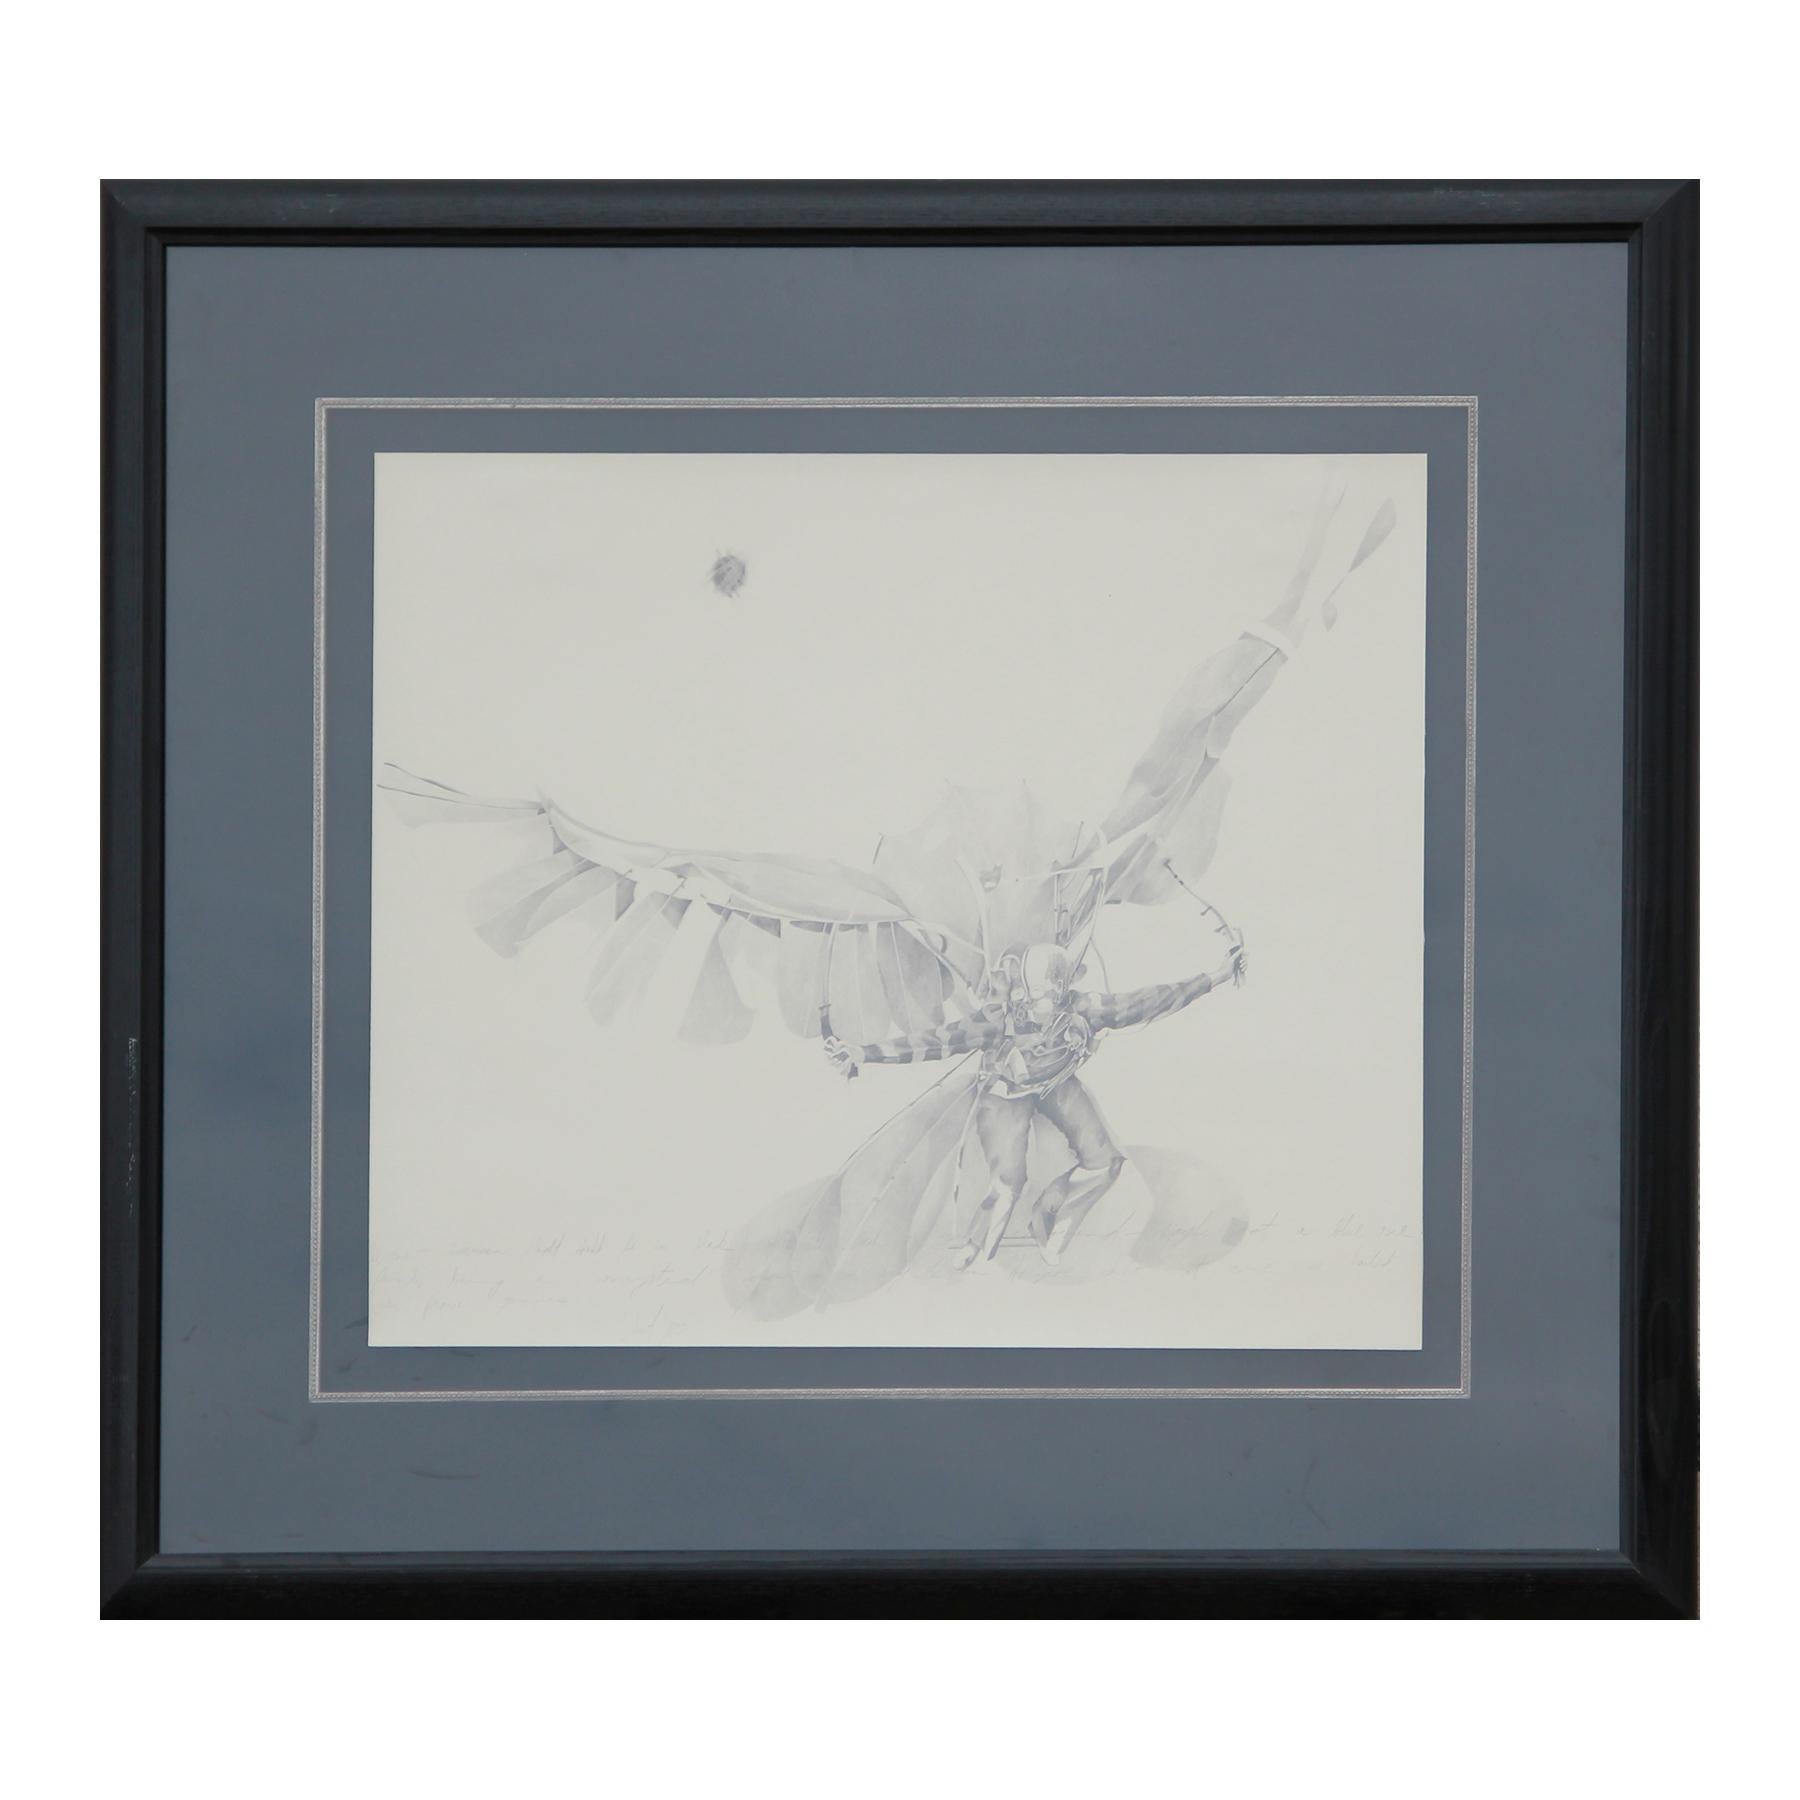 Unknown Figurative Art – Realistische Bleistiftzeichnung eines Mannes in fliegender Kontraption von Brewster McCloud